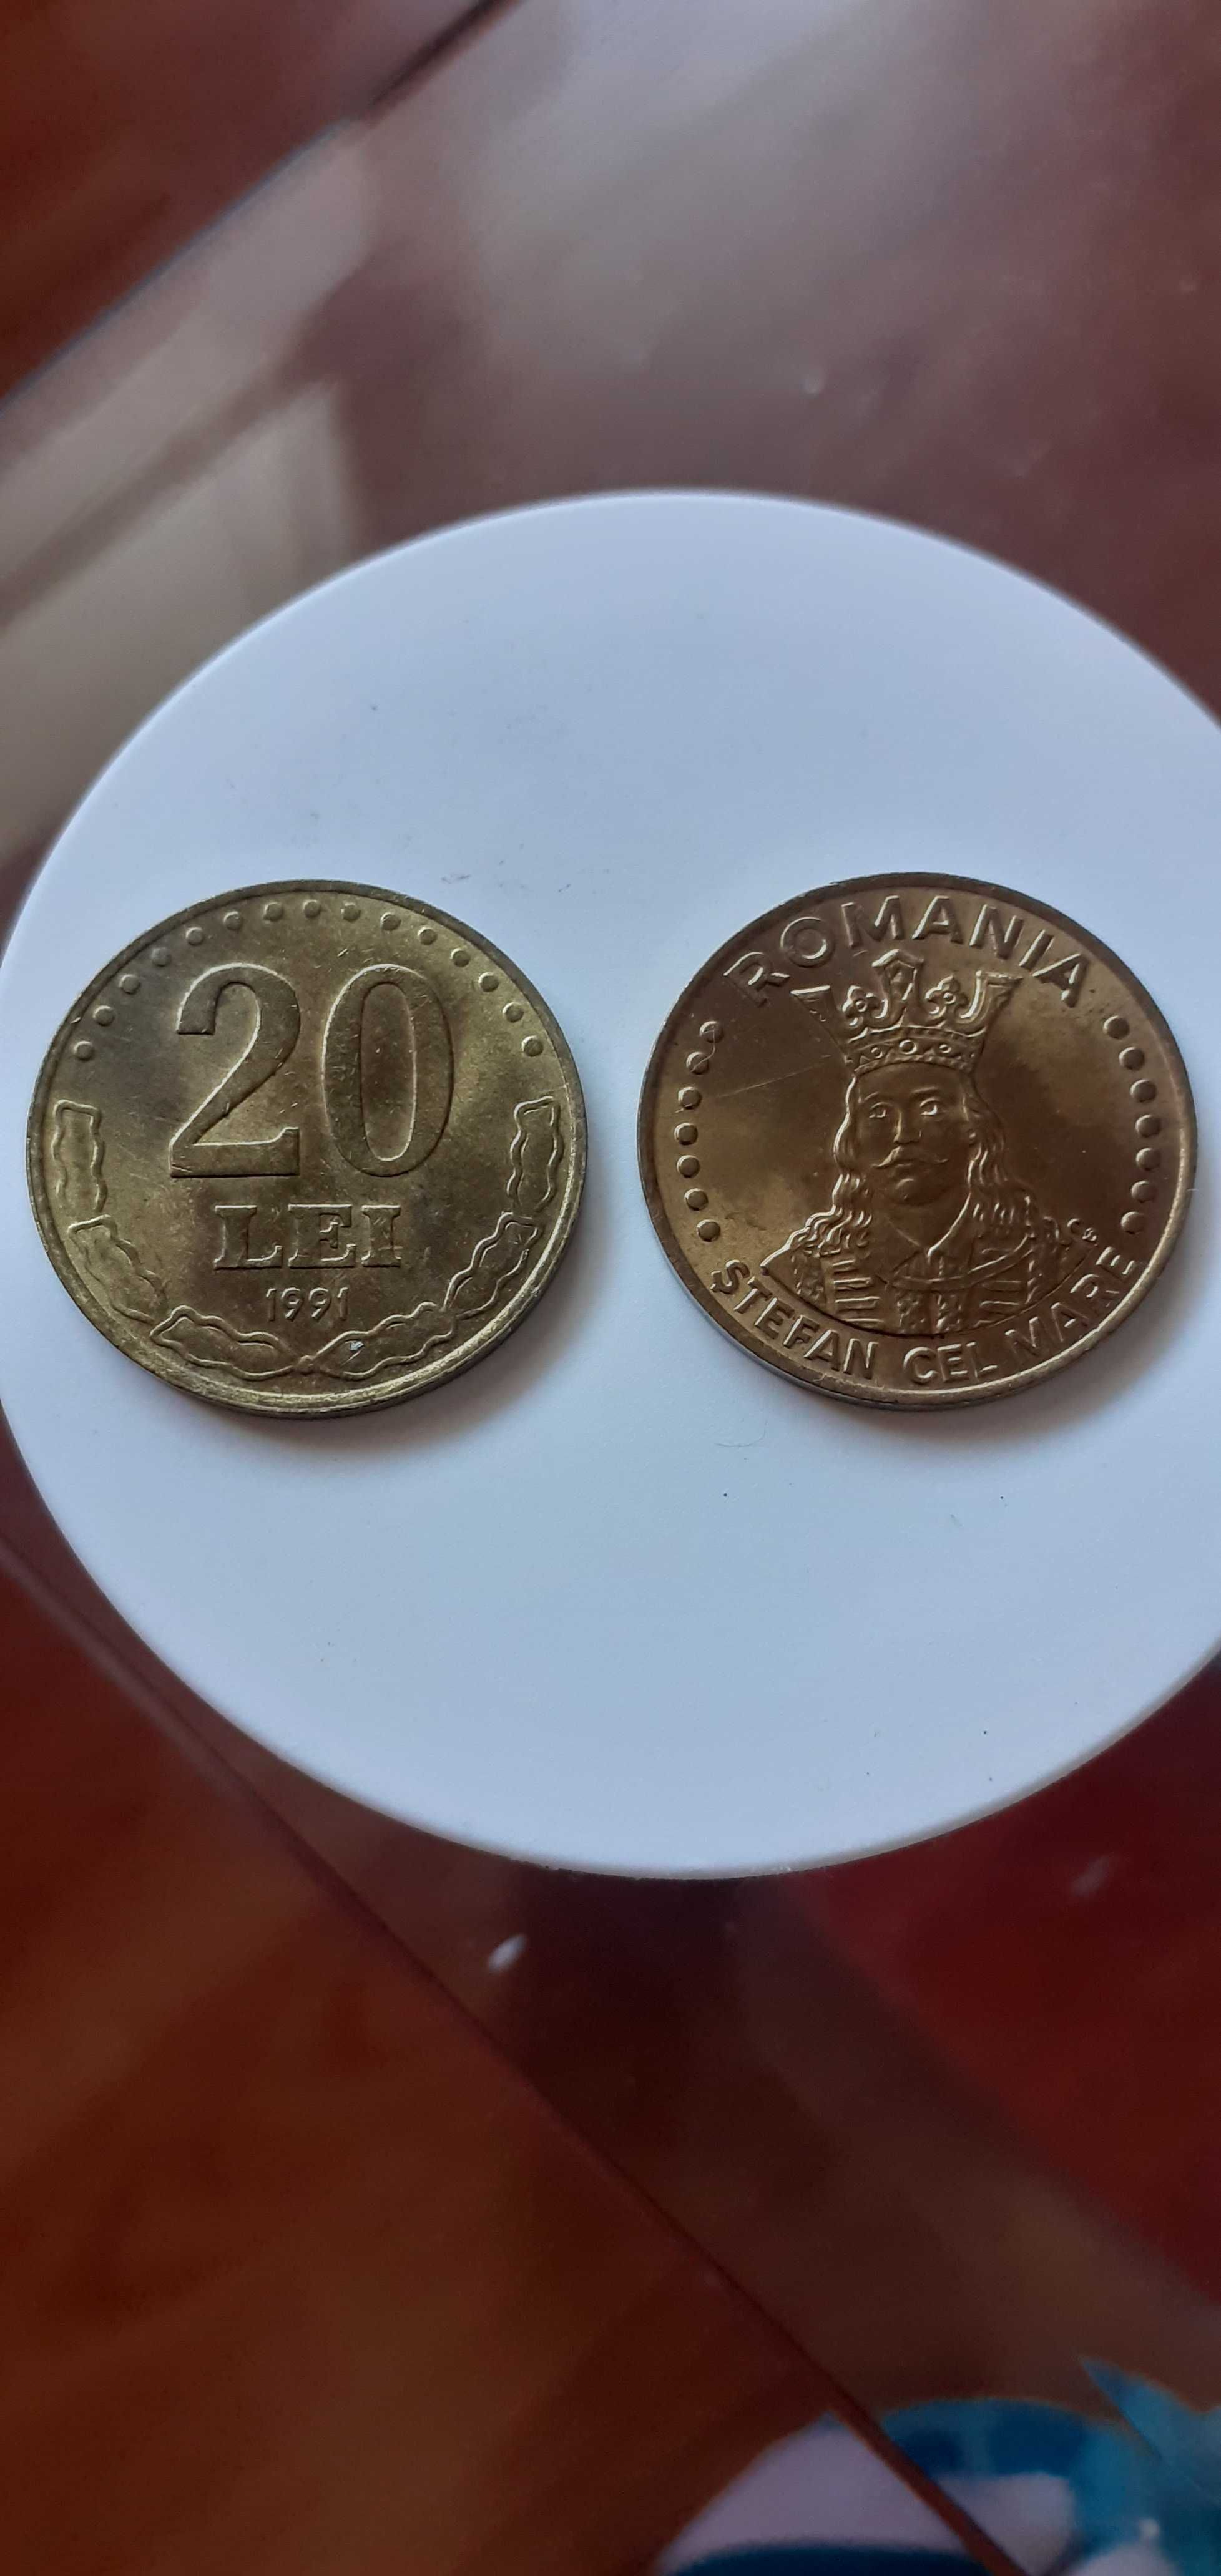 Vand monezi 20 lei, ani 1991 si 1992